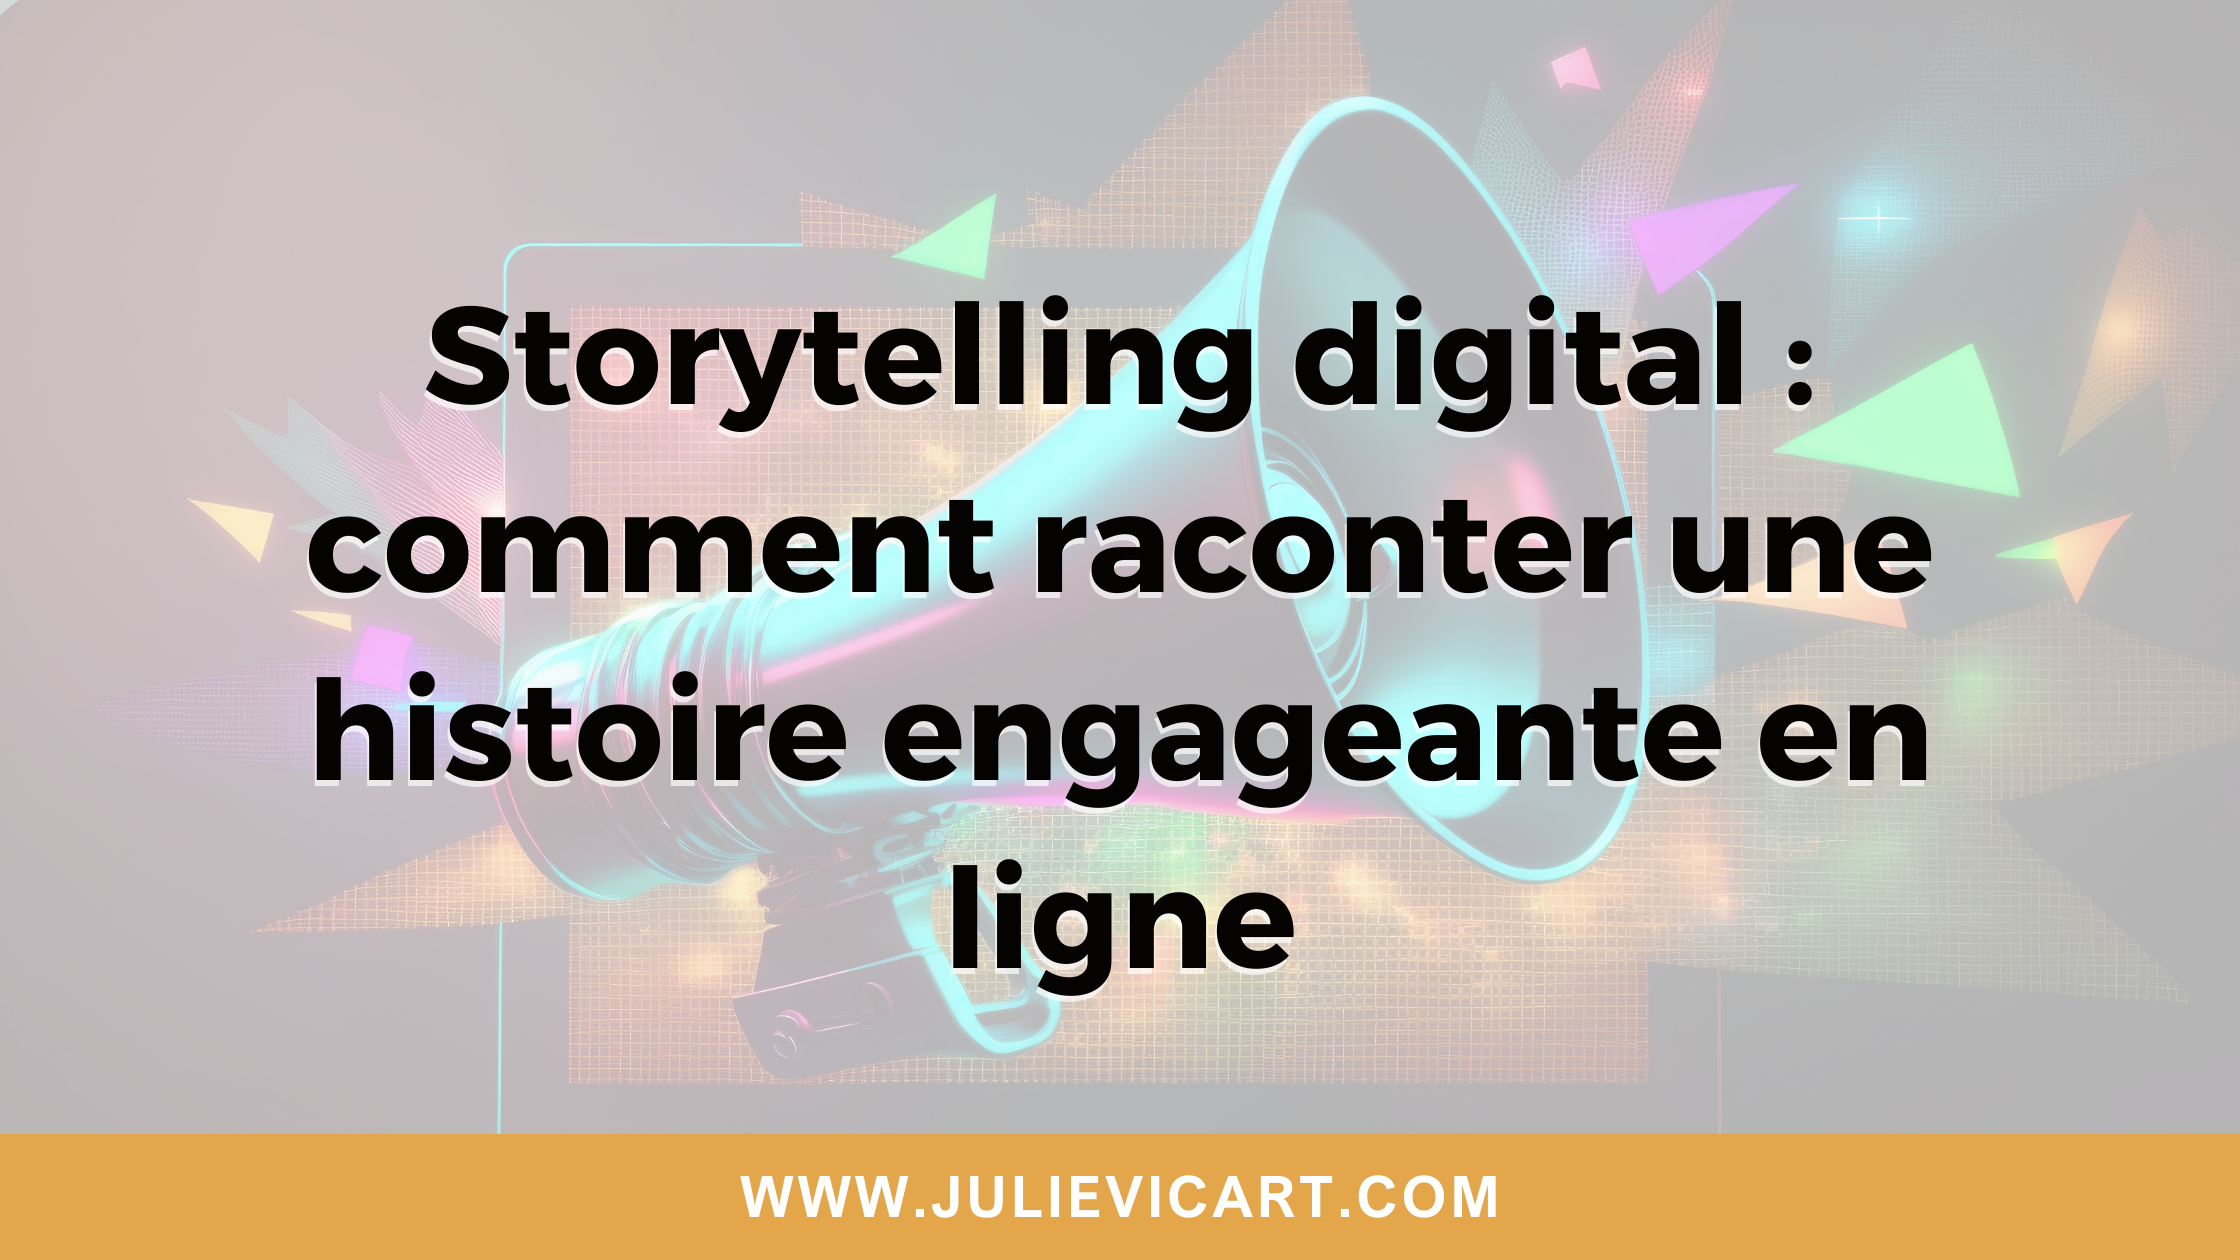 Storytelling digital : comment raconter une histoire engageante en ligne